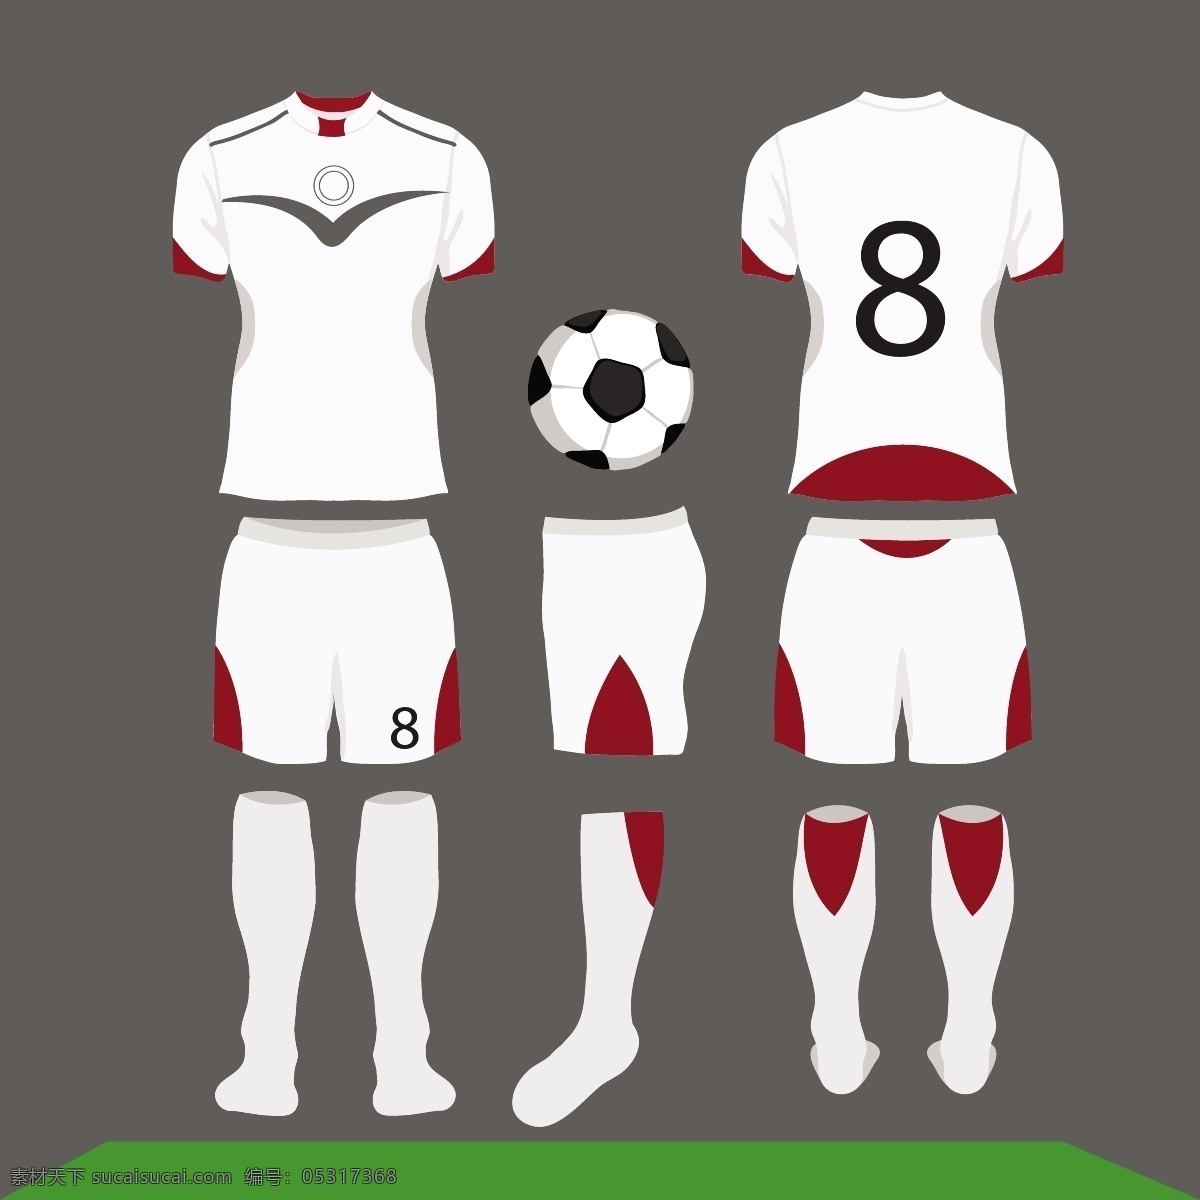 矢量 白色 红色 足球 服装 世界杯 矢量素材 俄罗斯 欧洲杯 卡通 比赛 体育 竞赛